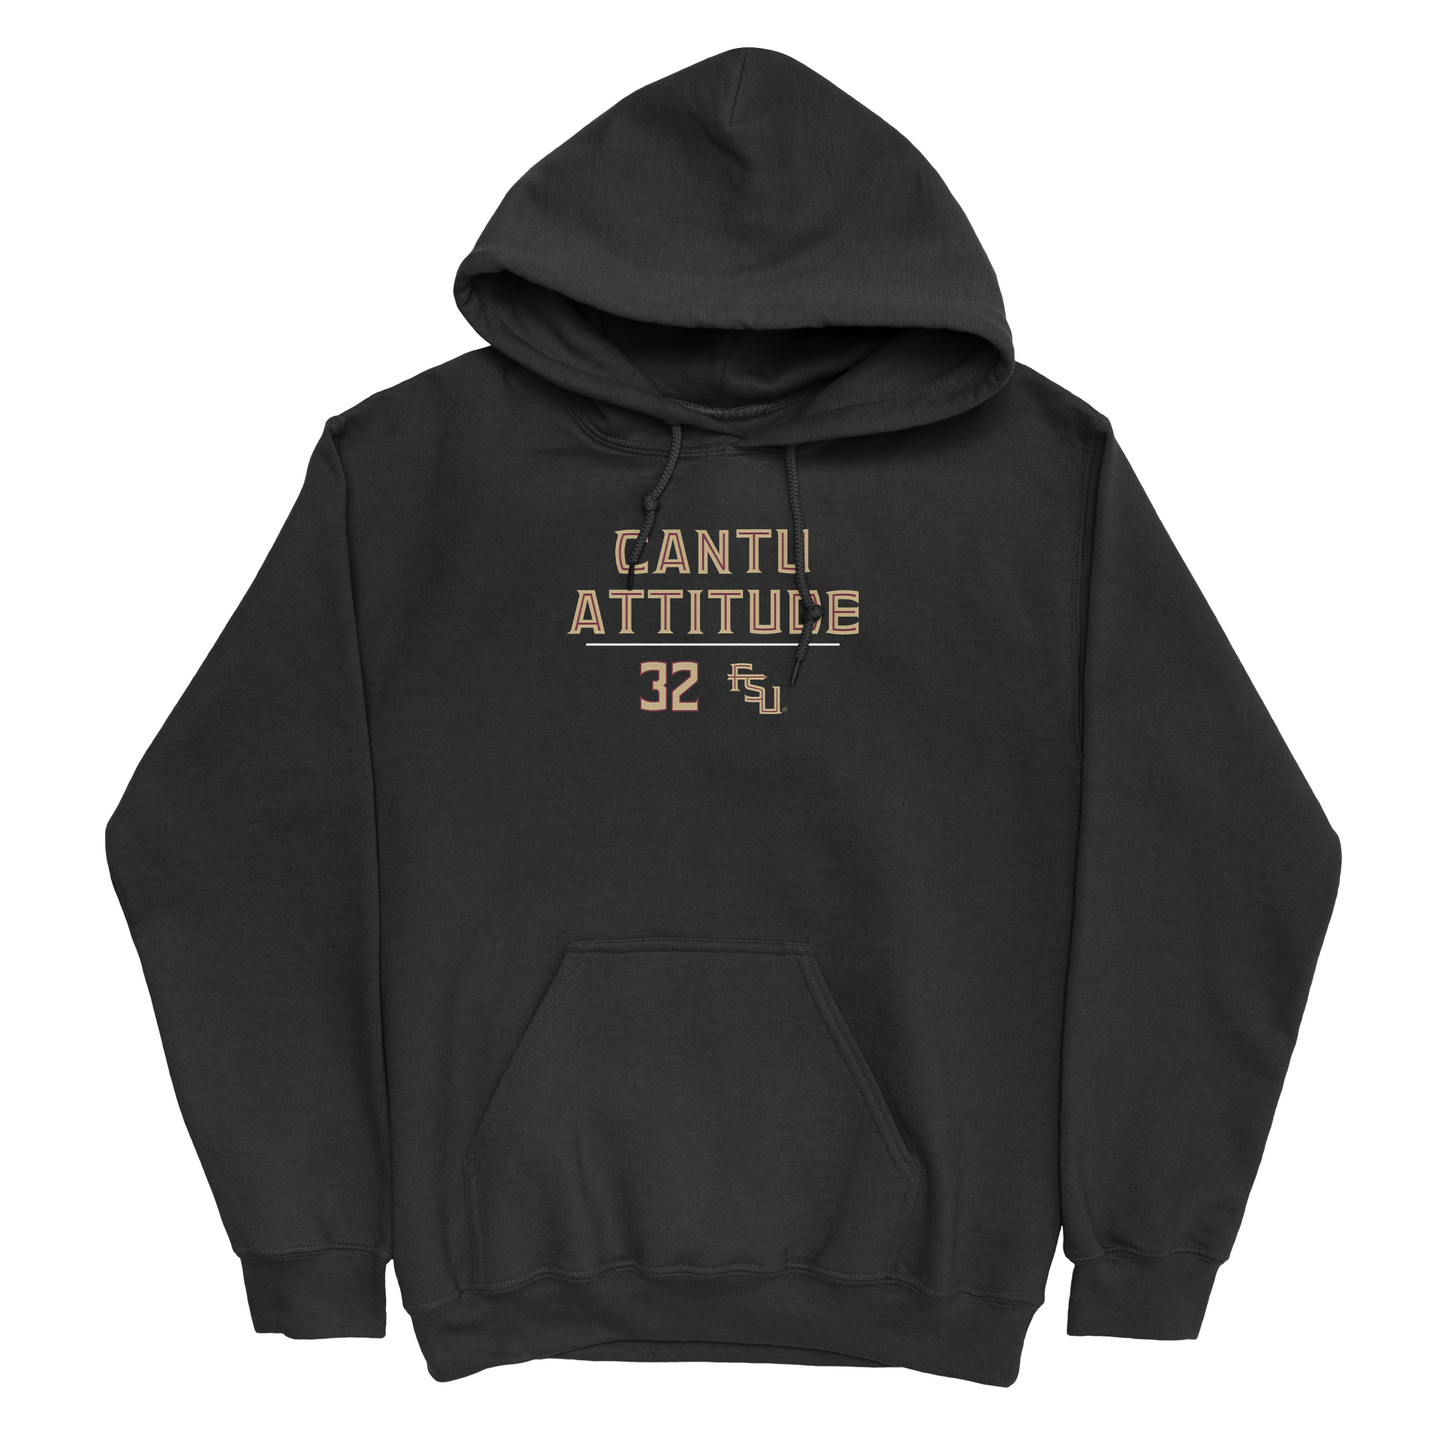 EXCLUSIVE RELEASE: Daniel Cantu "Cantu Attitude" Black Hoodie